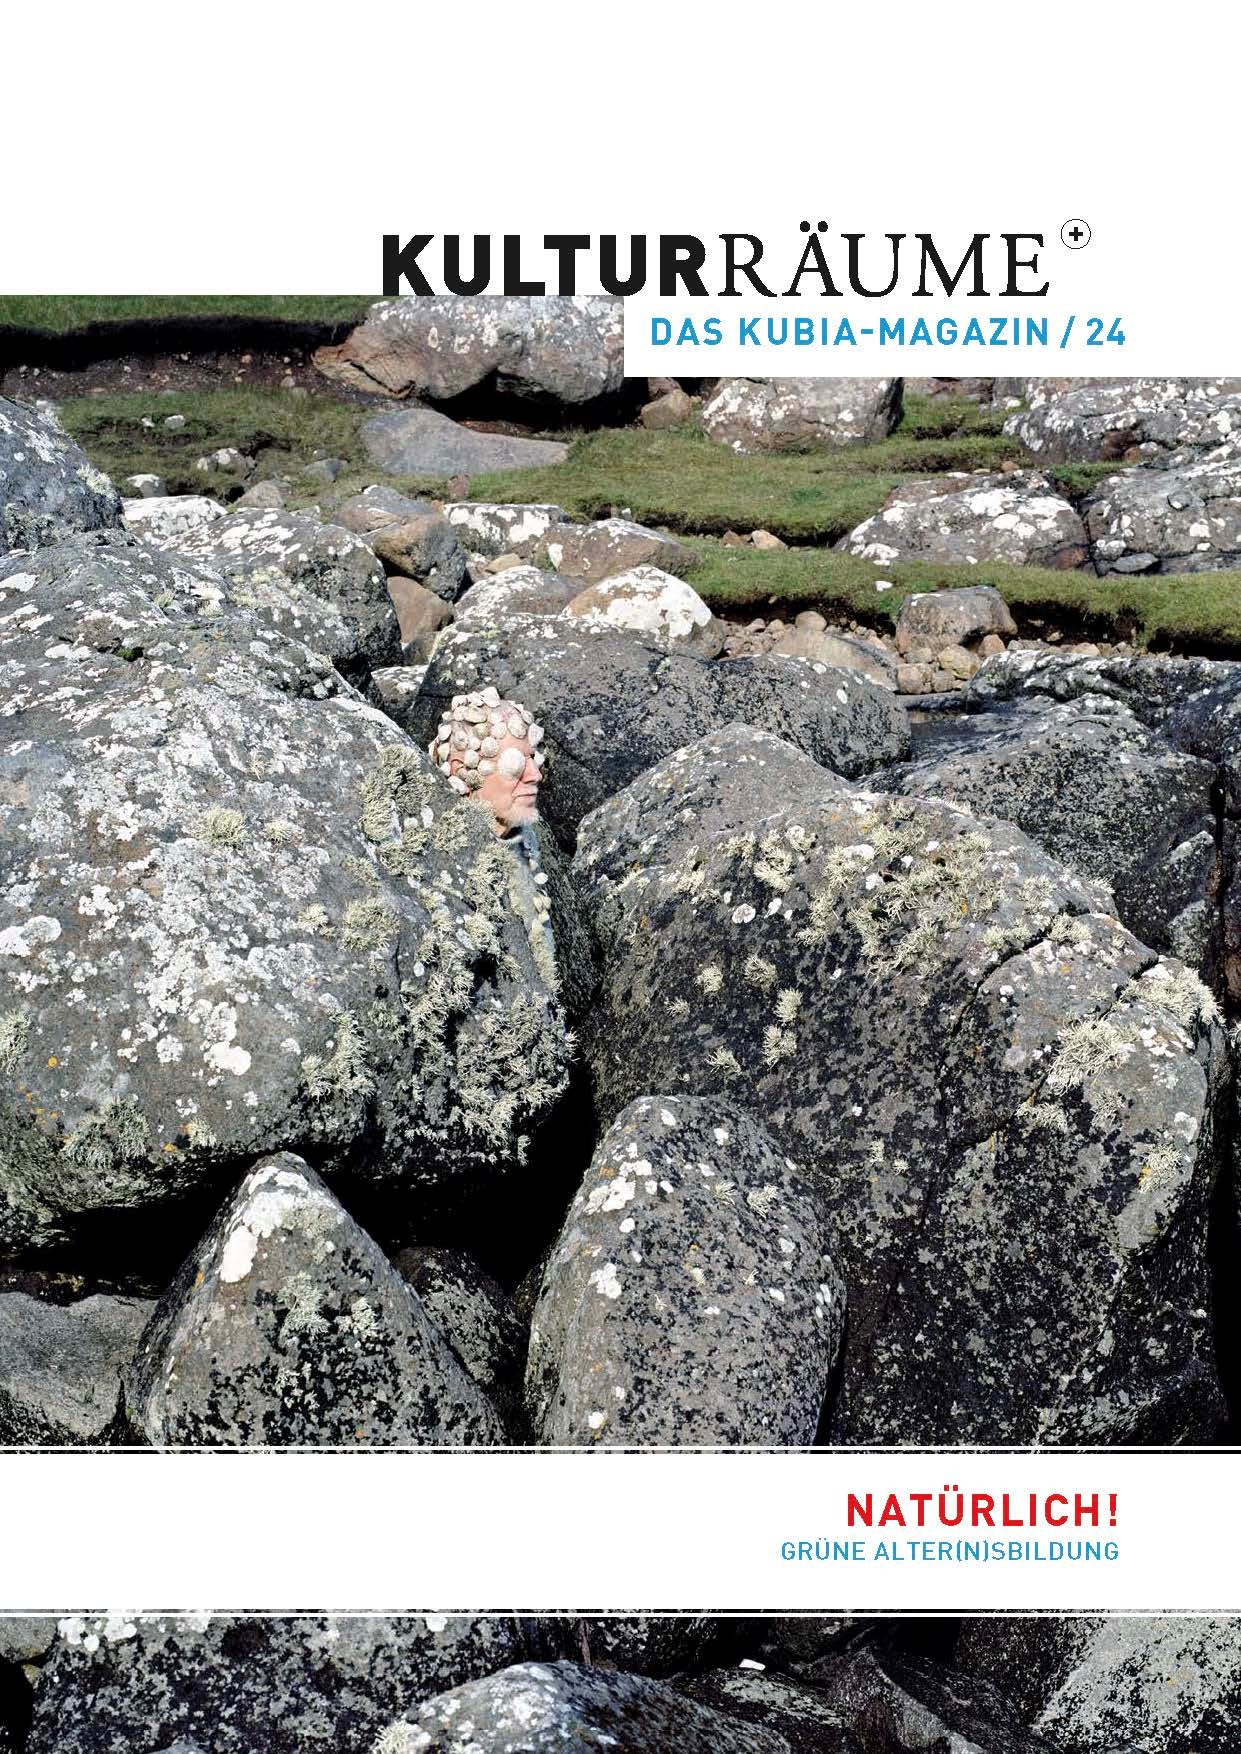 Cover Kulturräume+ 24/2023. Foto von Riitta Ikonen und Karoline Hjorth aus der Serie "Eyes as Big as Plates" mit dem Gesicht eines alten Manns, das scheinbar mit Muscheln bewachsen ist, was ihn zum Teil der ihn umgebenen Felslandschaft werden lässt.